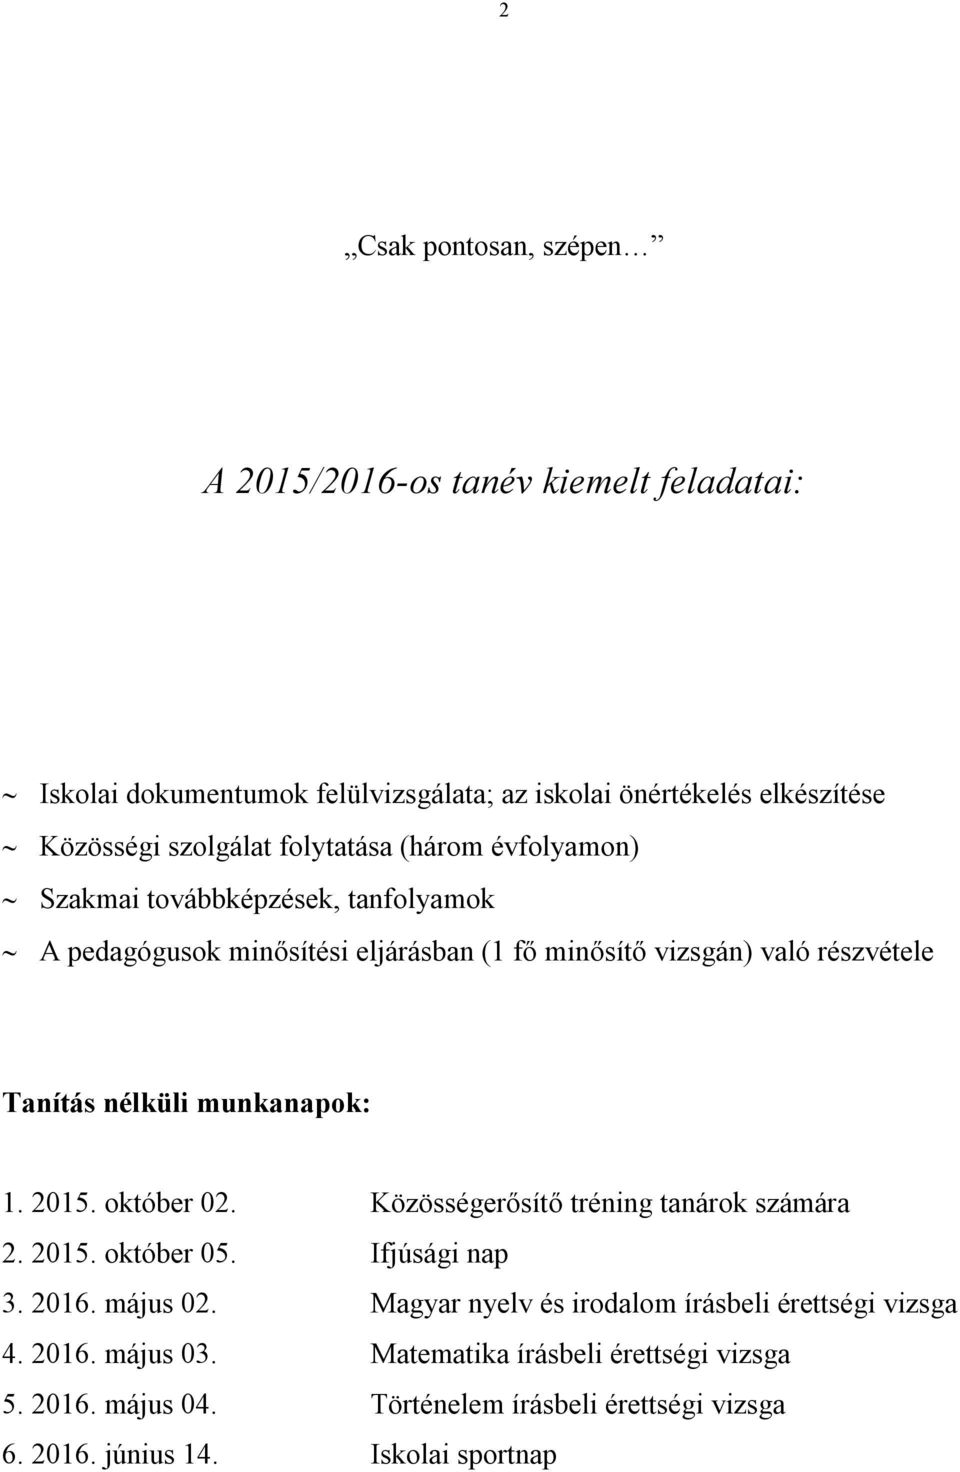 munkanapok: 1. 2015. október 02. Közösségerősítő tréning tanárok számára 2. 2015. október 05. Ifjúsági nap 3. 2016. május 02.